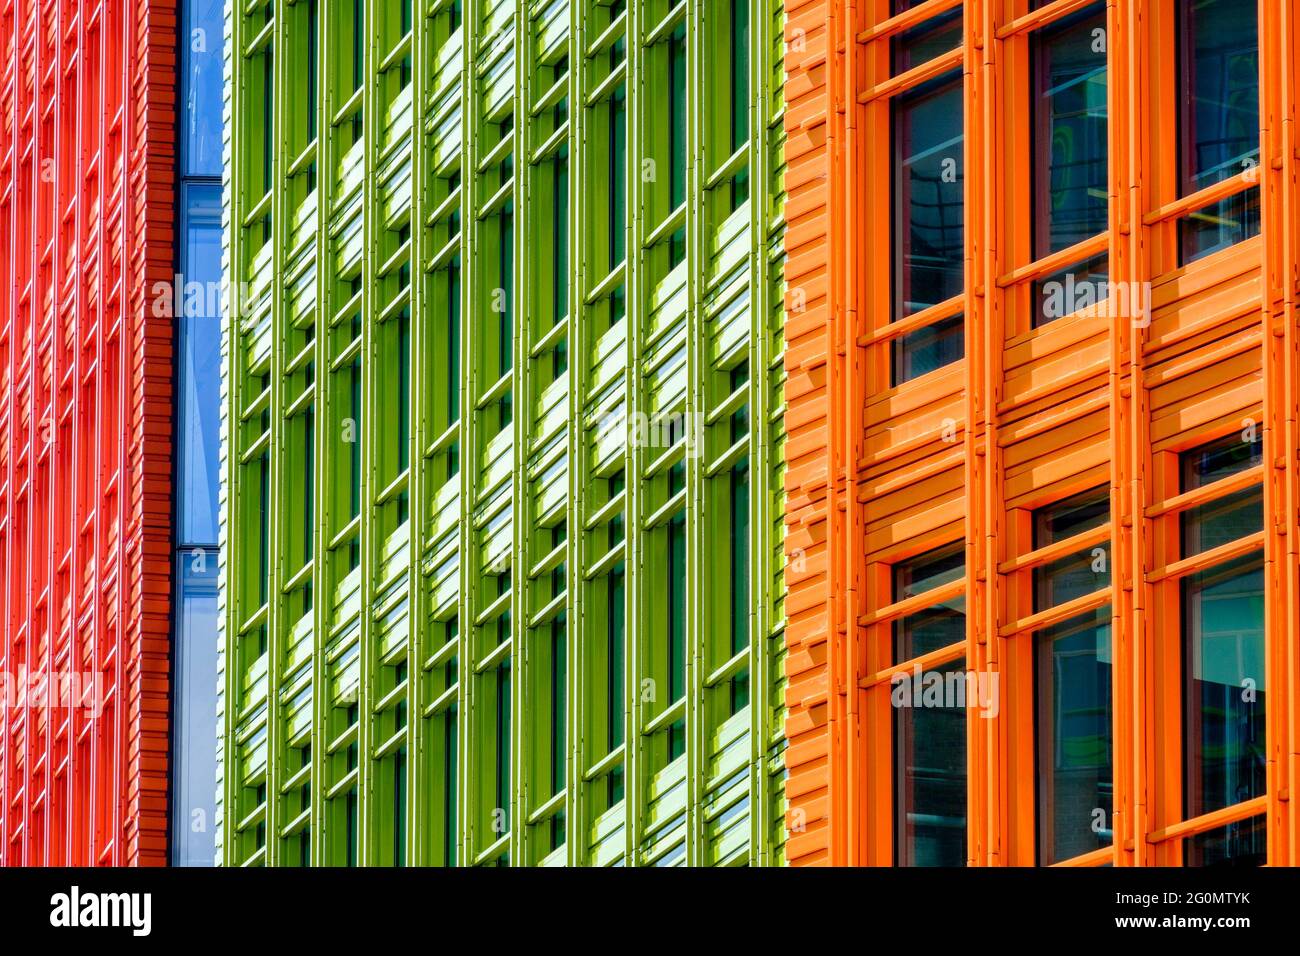 Développement central de Saint Giles, architecture contemporaine, conçu par l'architecte italien Renzo Piano, Londres, Royaume-Uni Banque D'Images